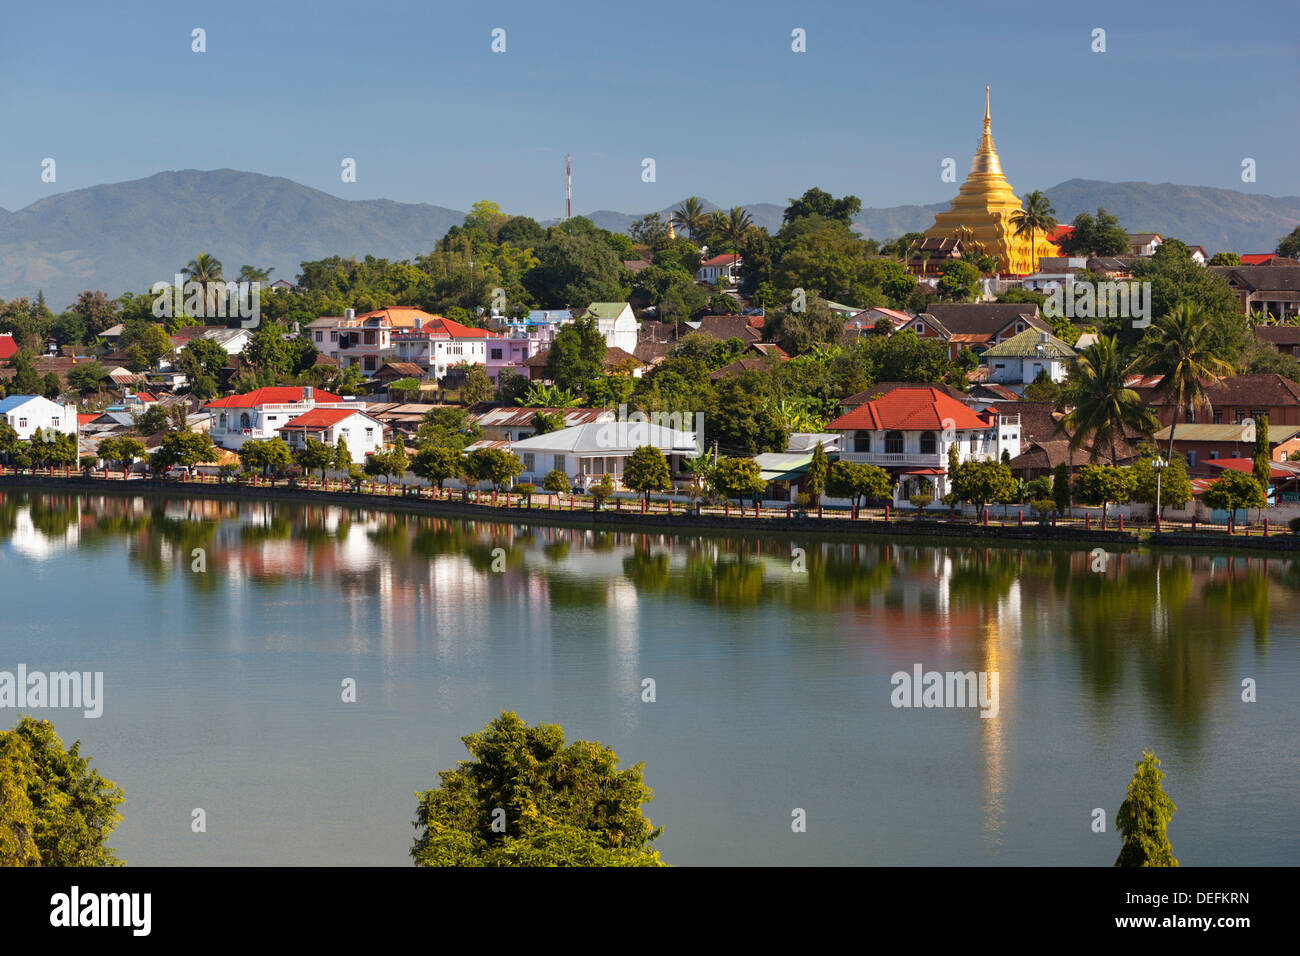 Wat Jong Kham y edificios de la época colonial en Naung Lago Tung, Kengtung, Estado de Shan, Myanmar (Birmania), Asia Foto de stock